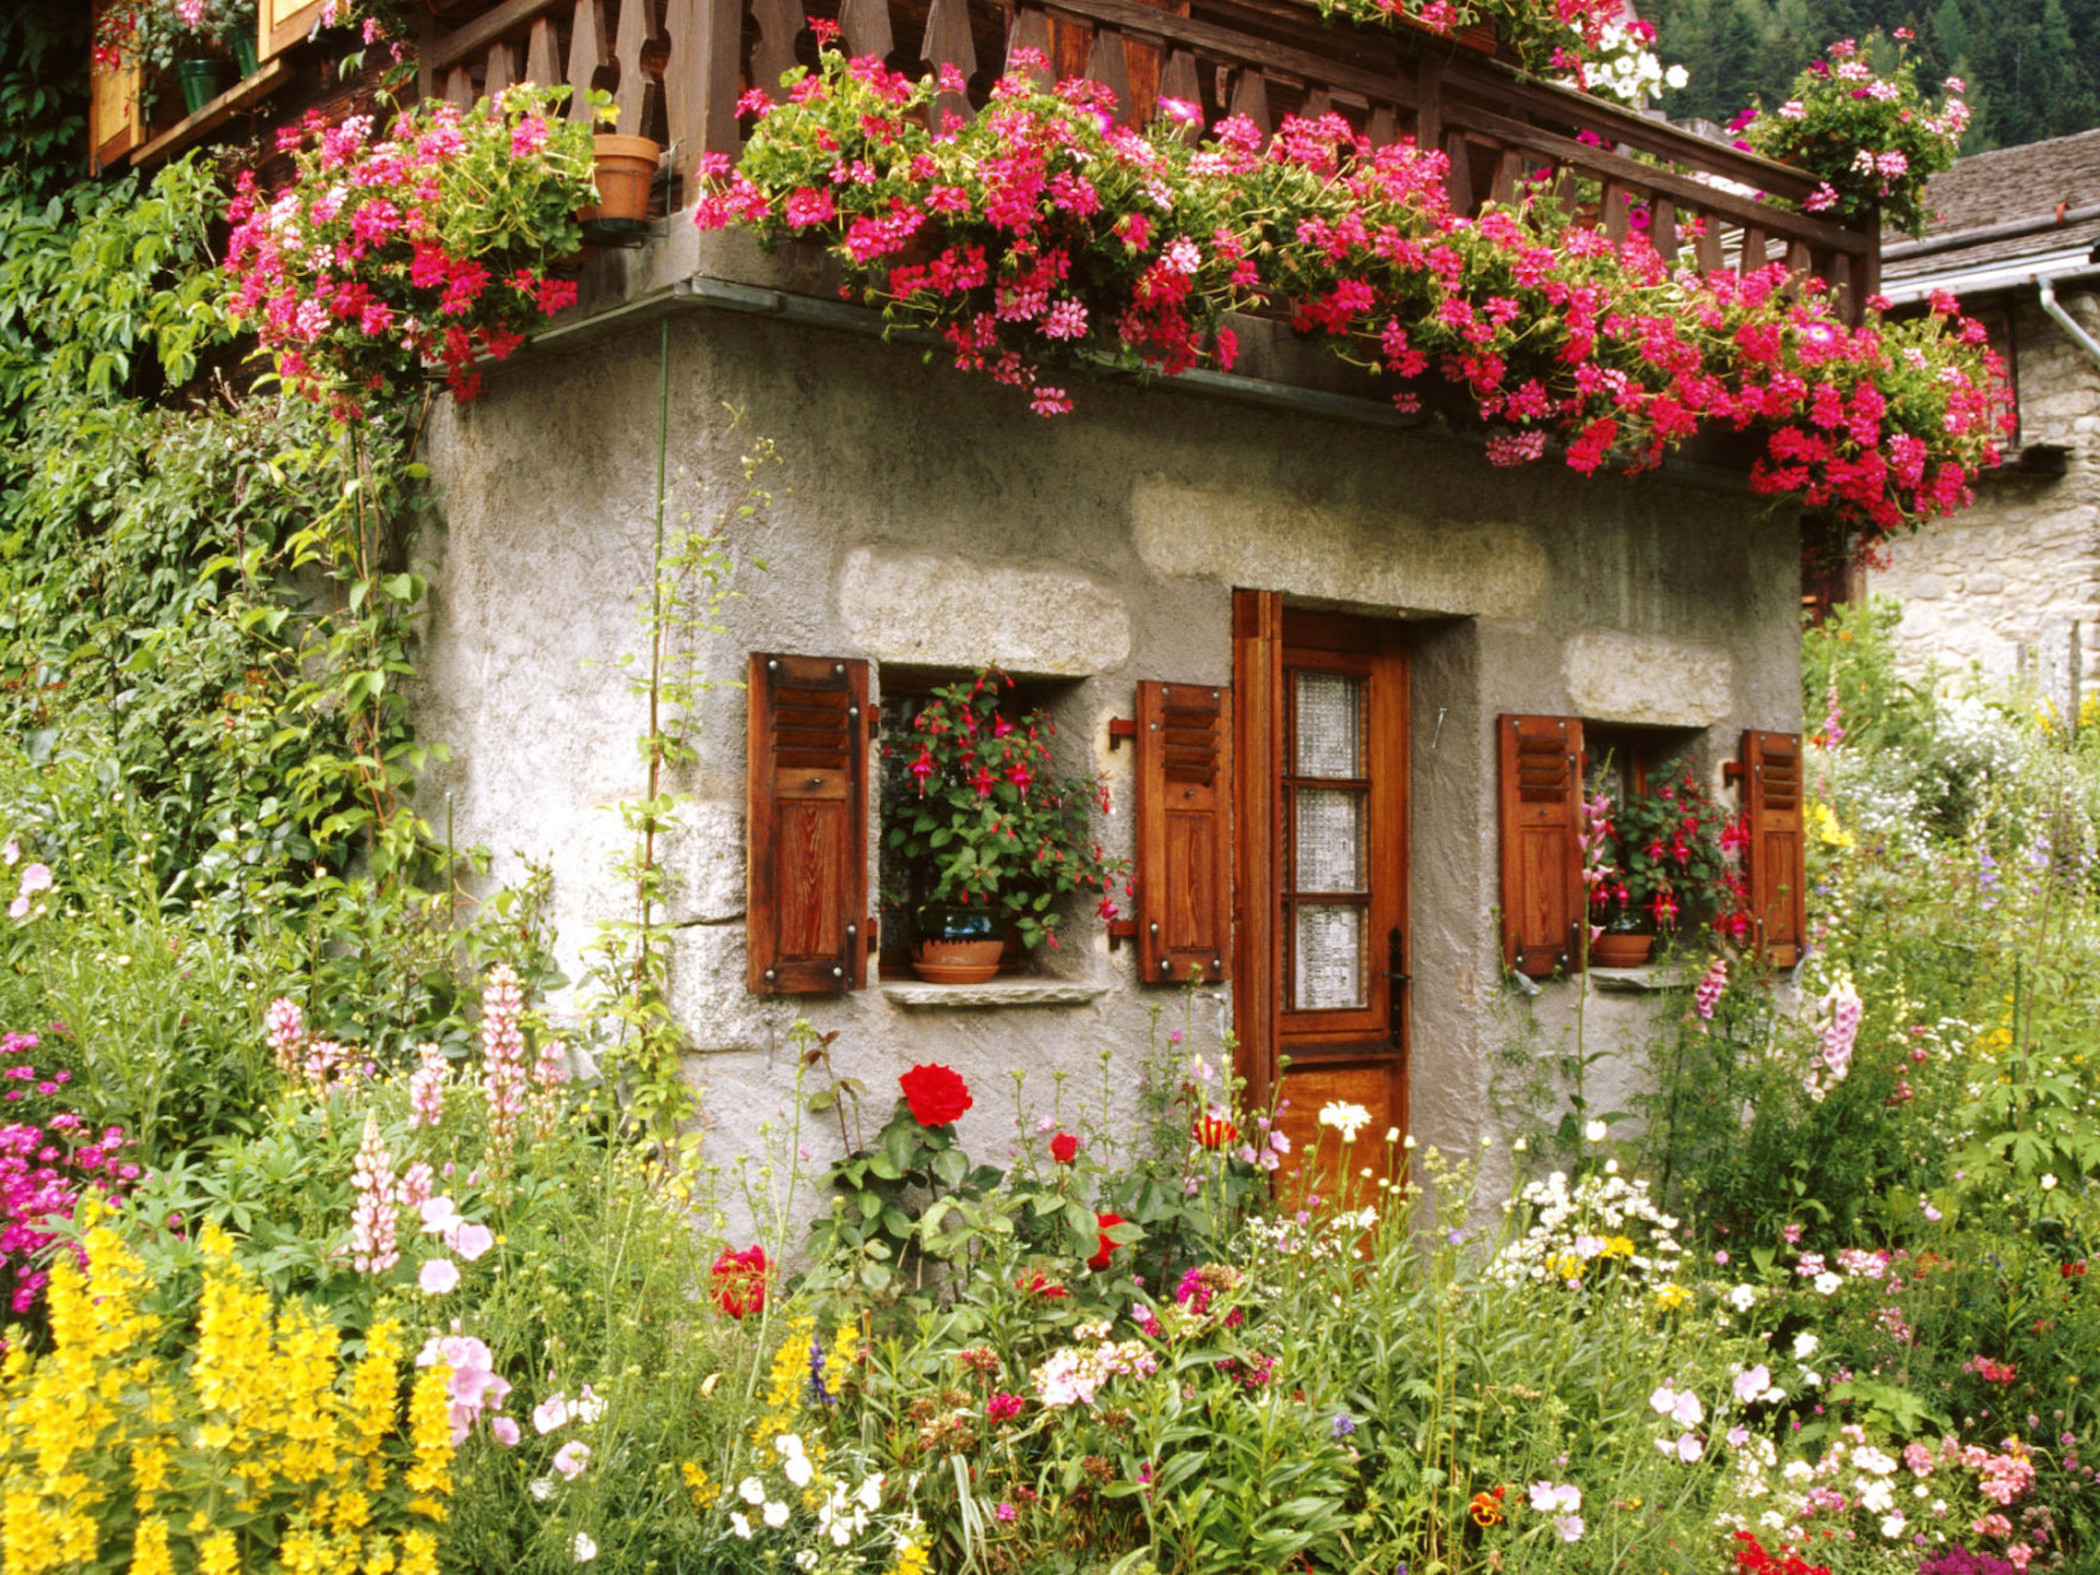  home garden image